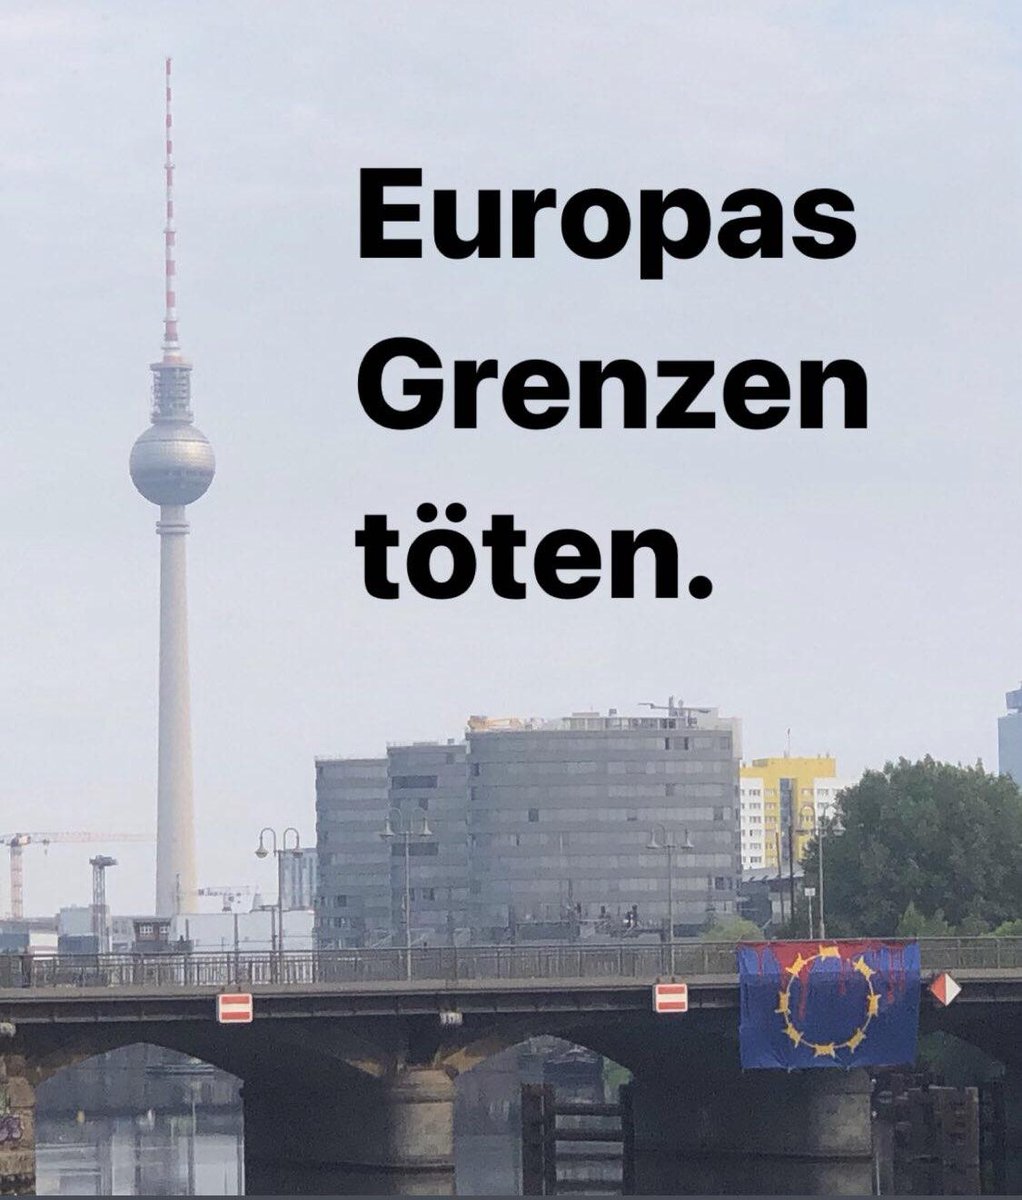 Europas Grenzen töten.
[Foto wurde uns zugeschickt] Offenbar gab es heute Morgen in Berlin einen Bannerdrop gegen die brutale und mörderische #Migrationspolitik der EU, gegen deren #Asylrechtsverschärfung und gegen die Festung #Europa.
#GEAS #RefugeesWelcome  #OpenBorders #B2006